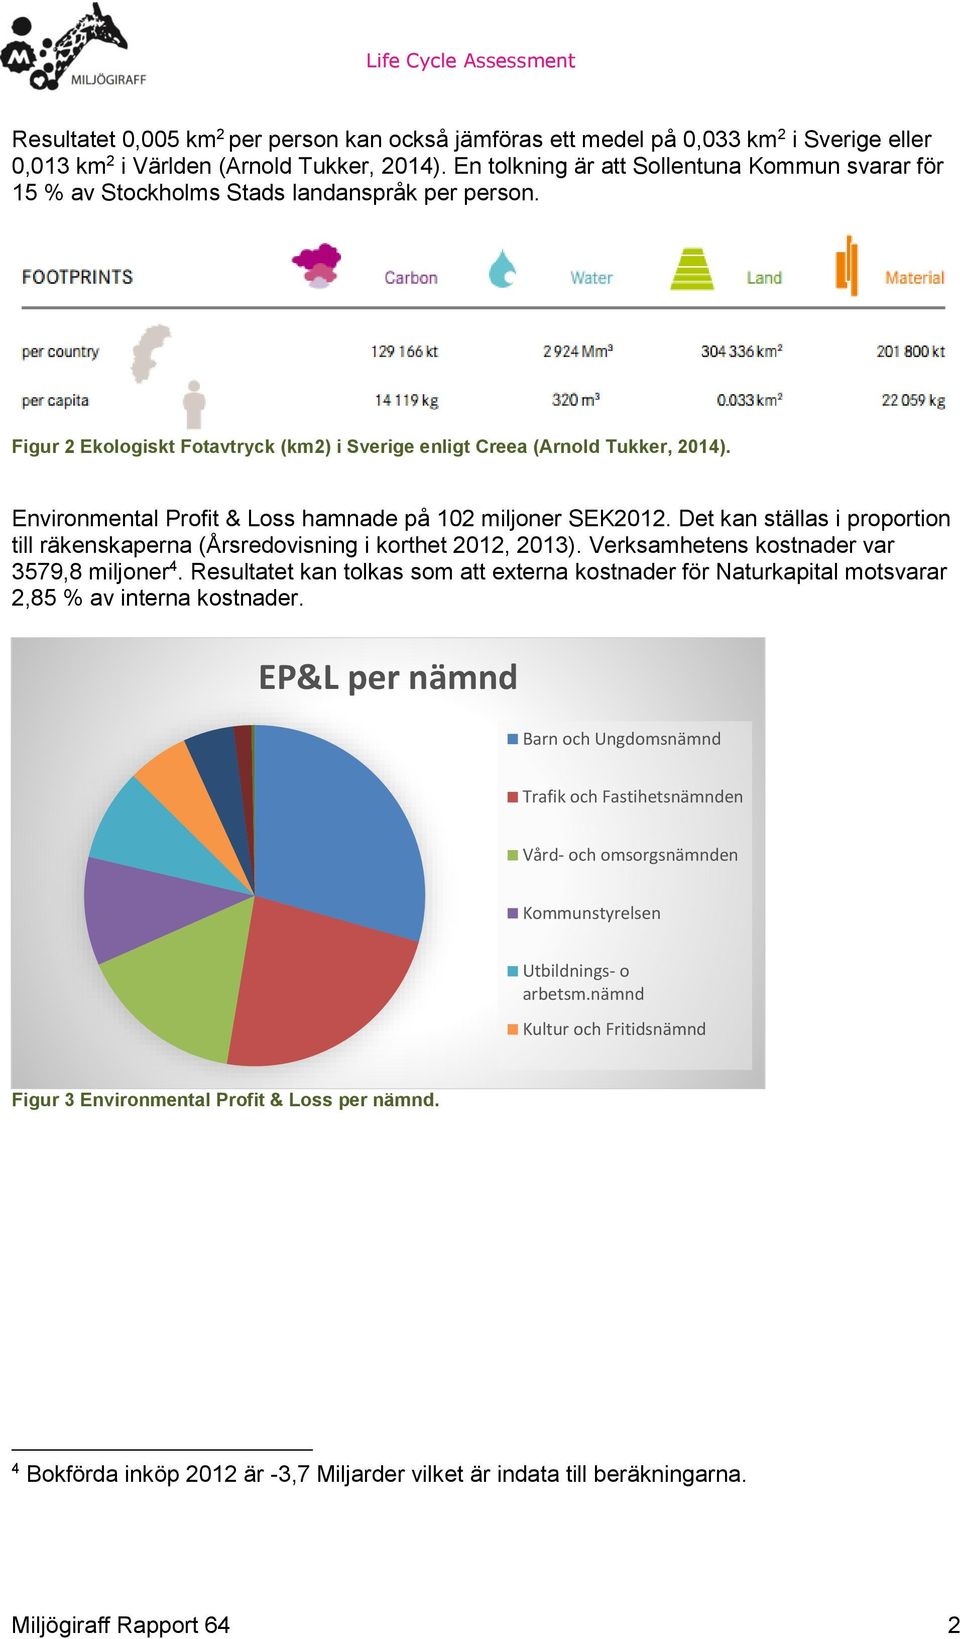 Environmental Profit & Loss hamnade på 102 miljoner SEK2012. Det kan ställas i proportion till räkenskaperna (Årsredovisning i korthet 2012, 2013). Verksamhetens kostnader var 3579,8 miljoner 4.